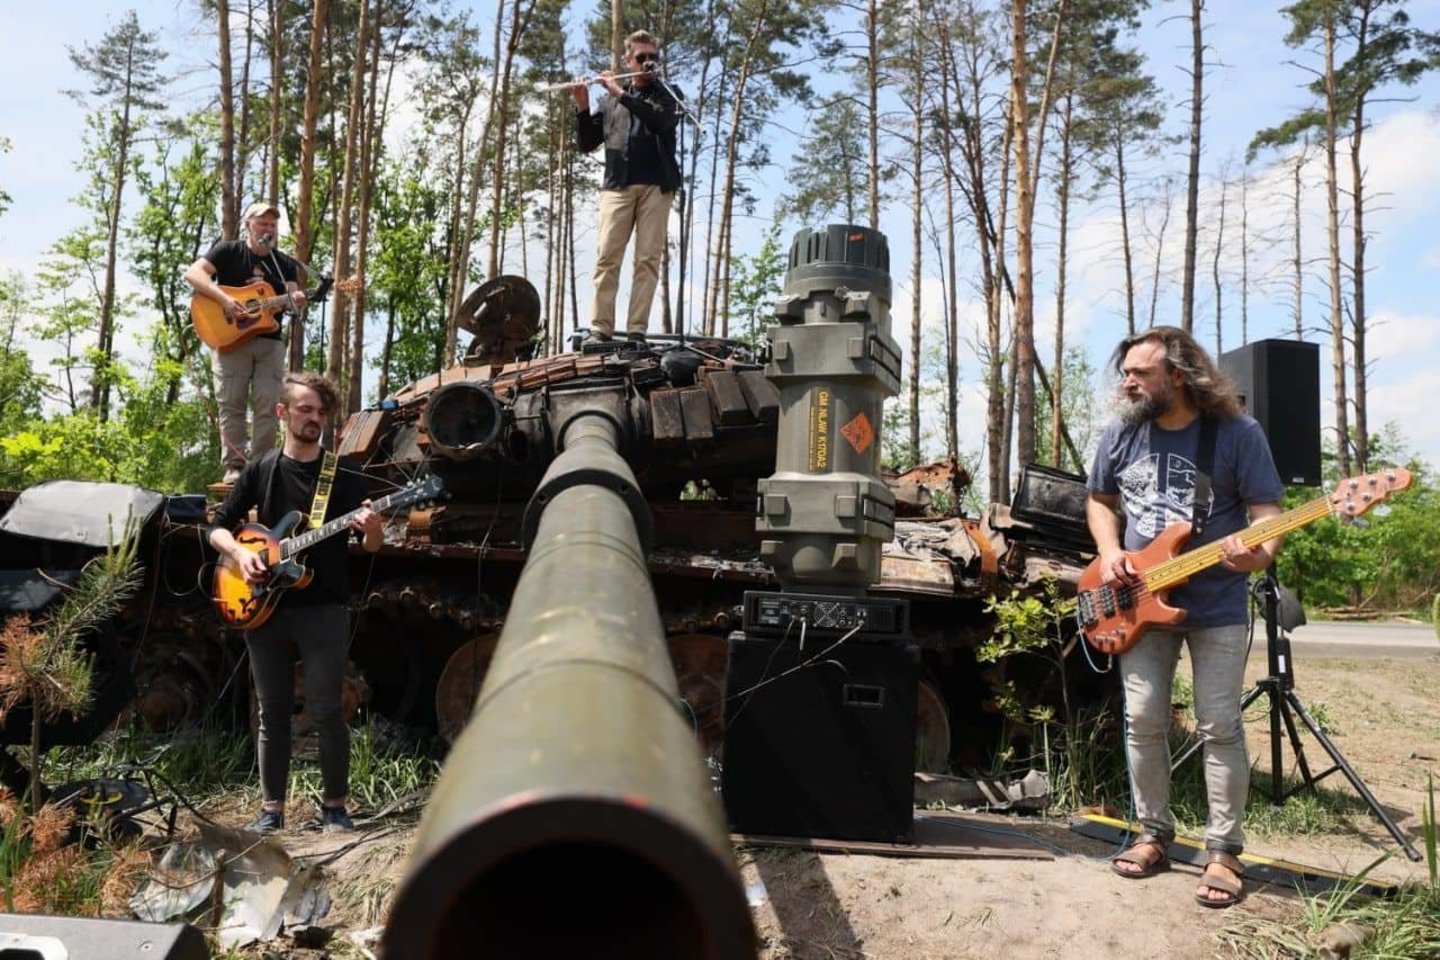  Šiuo metu Lietuvoje koncertuojant ukrainiečių grupė "Ocheretyany kit" visas surinktas lėšas skiria savo šalies kariuomenei, kovojančiai su nuožmiu priešu (nuotr. koncerto akimirka viename "karštų" taškų Ukrainoje).  <br> Nuotr. iš asmeninio archyvo.